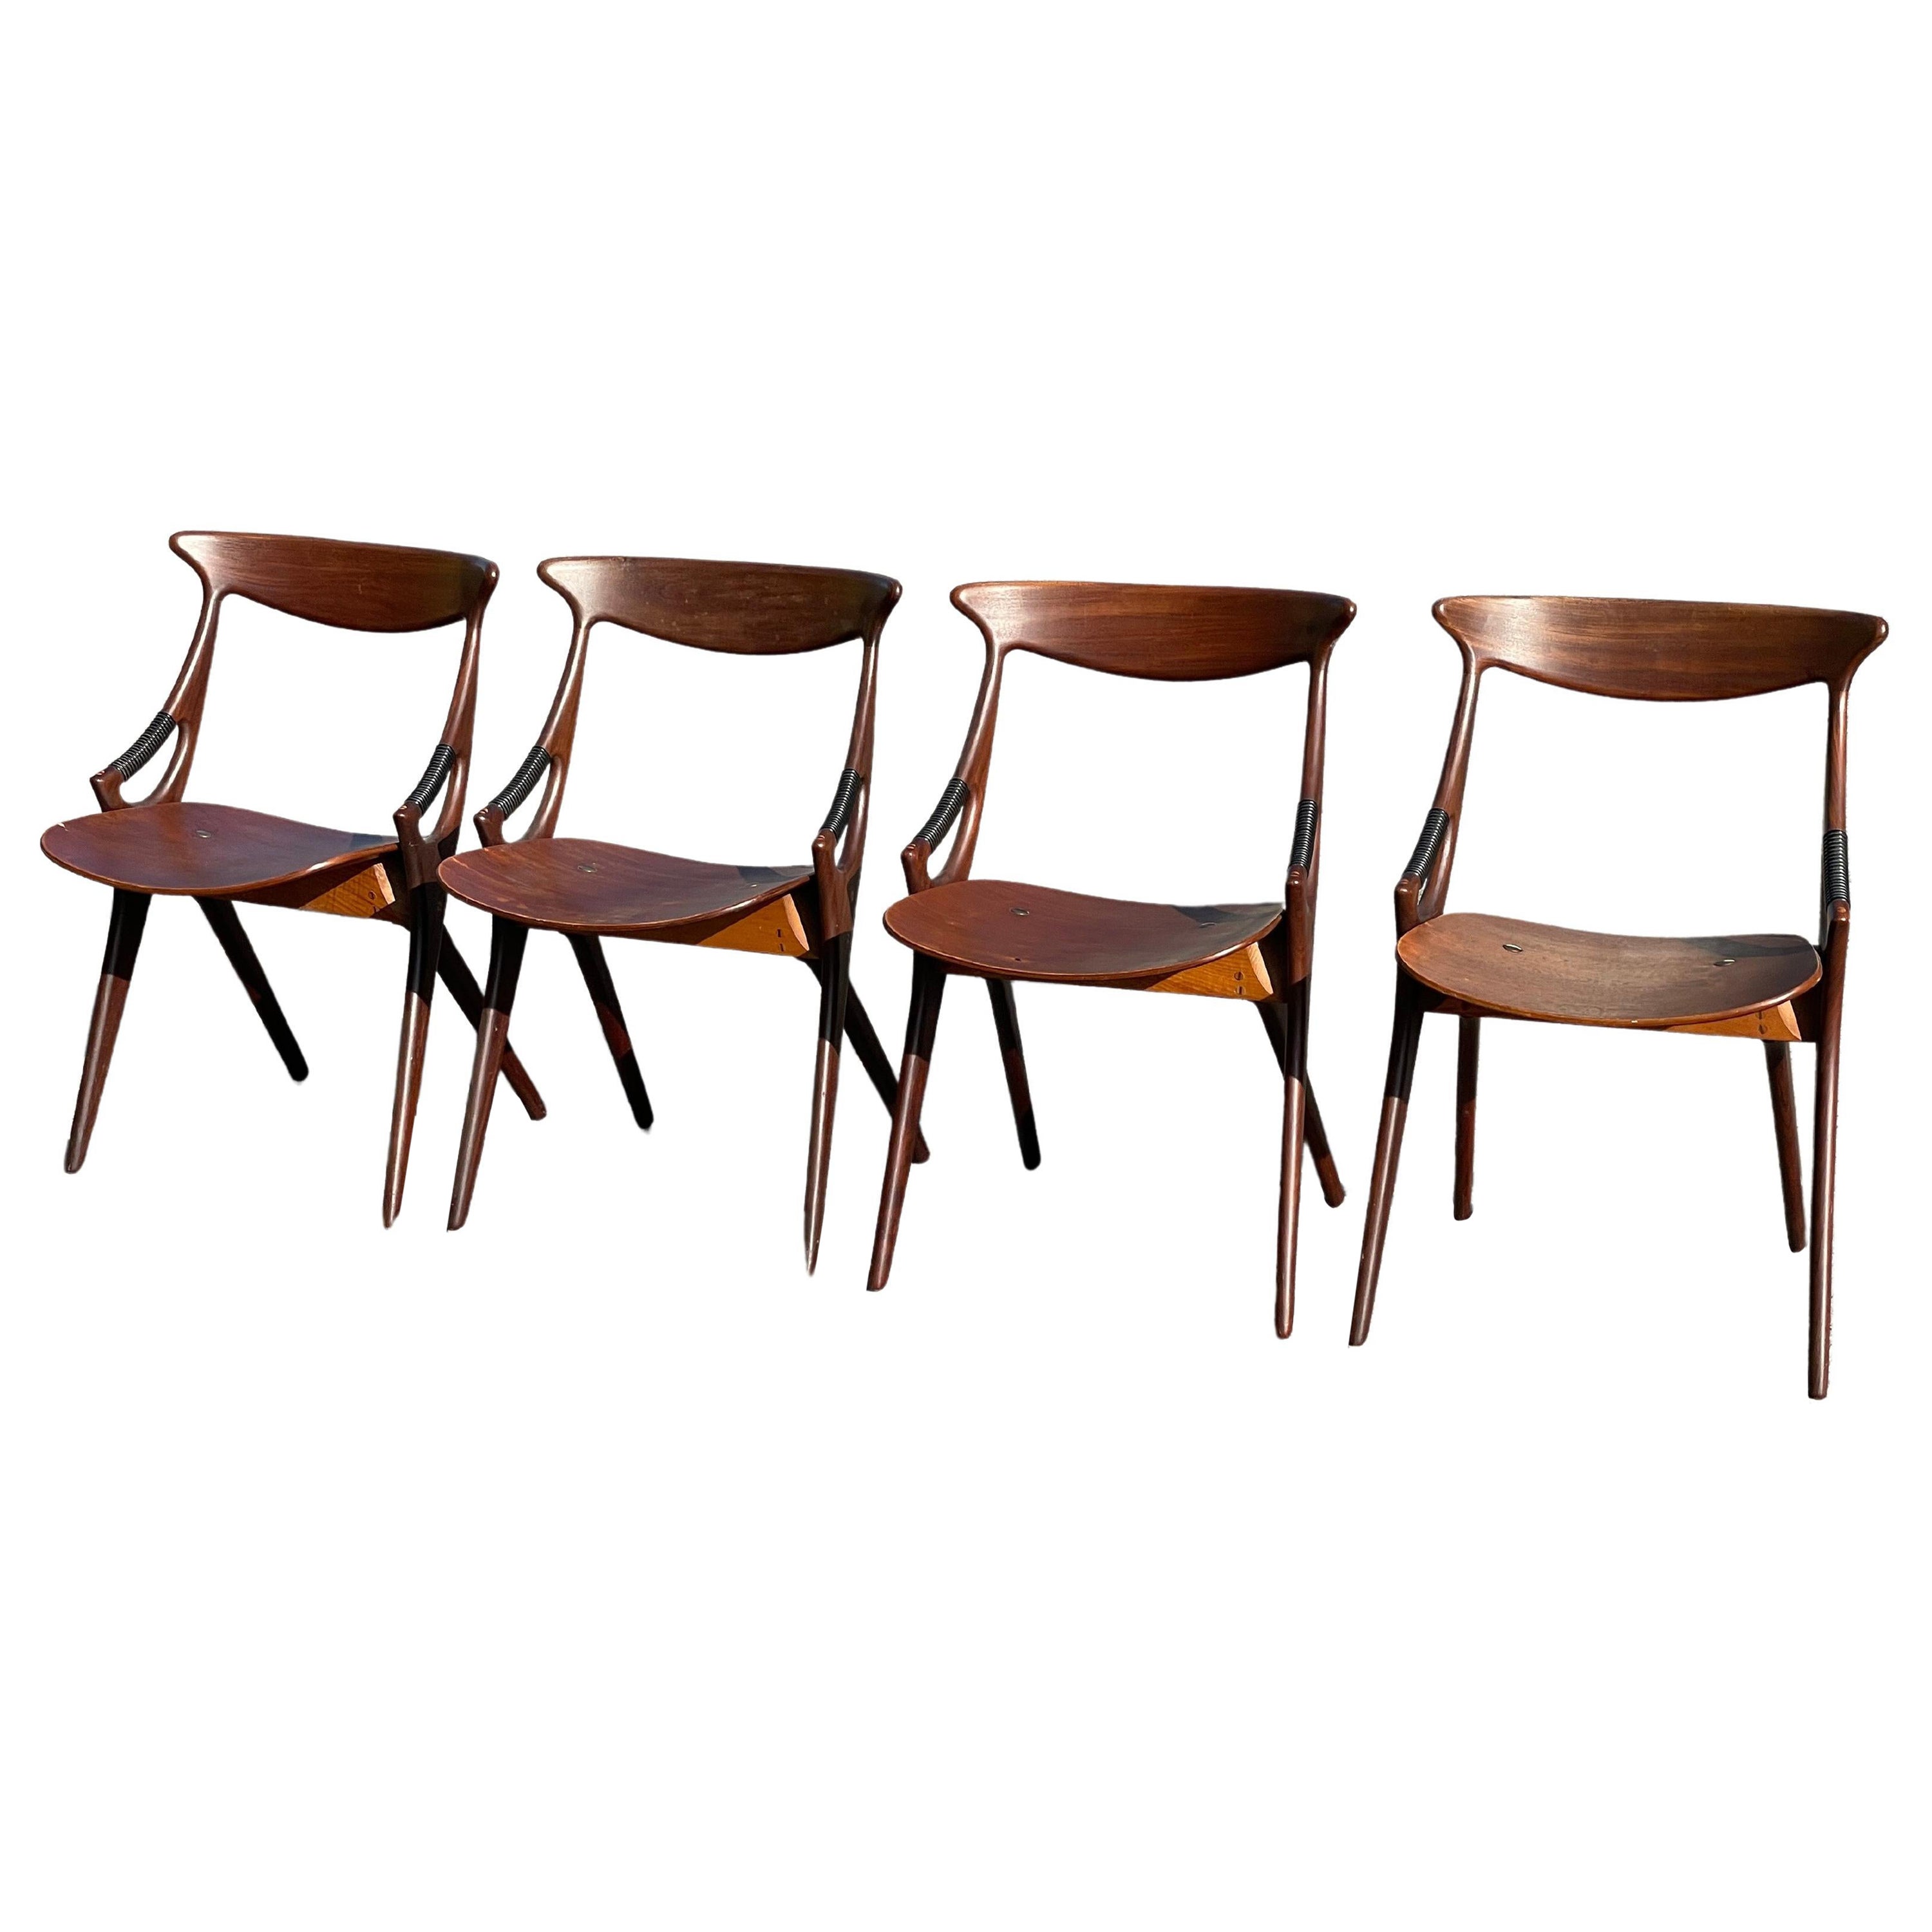 4 Dining Chairs by Arne Hovmand Olsen for Mogens Kold, Denmark, 1959